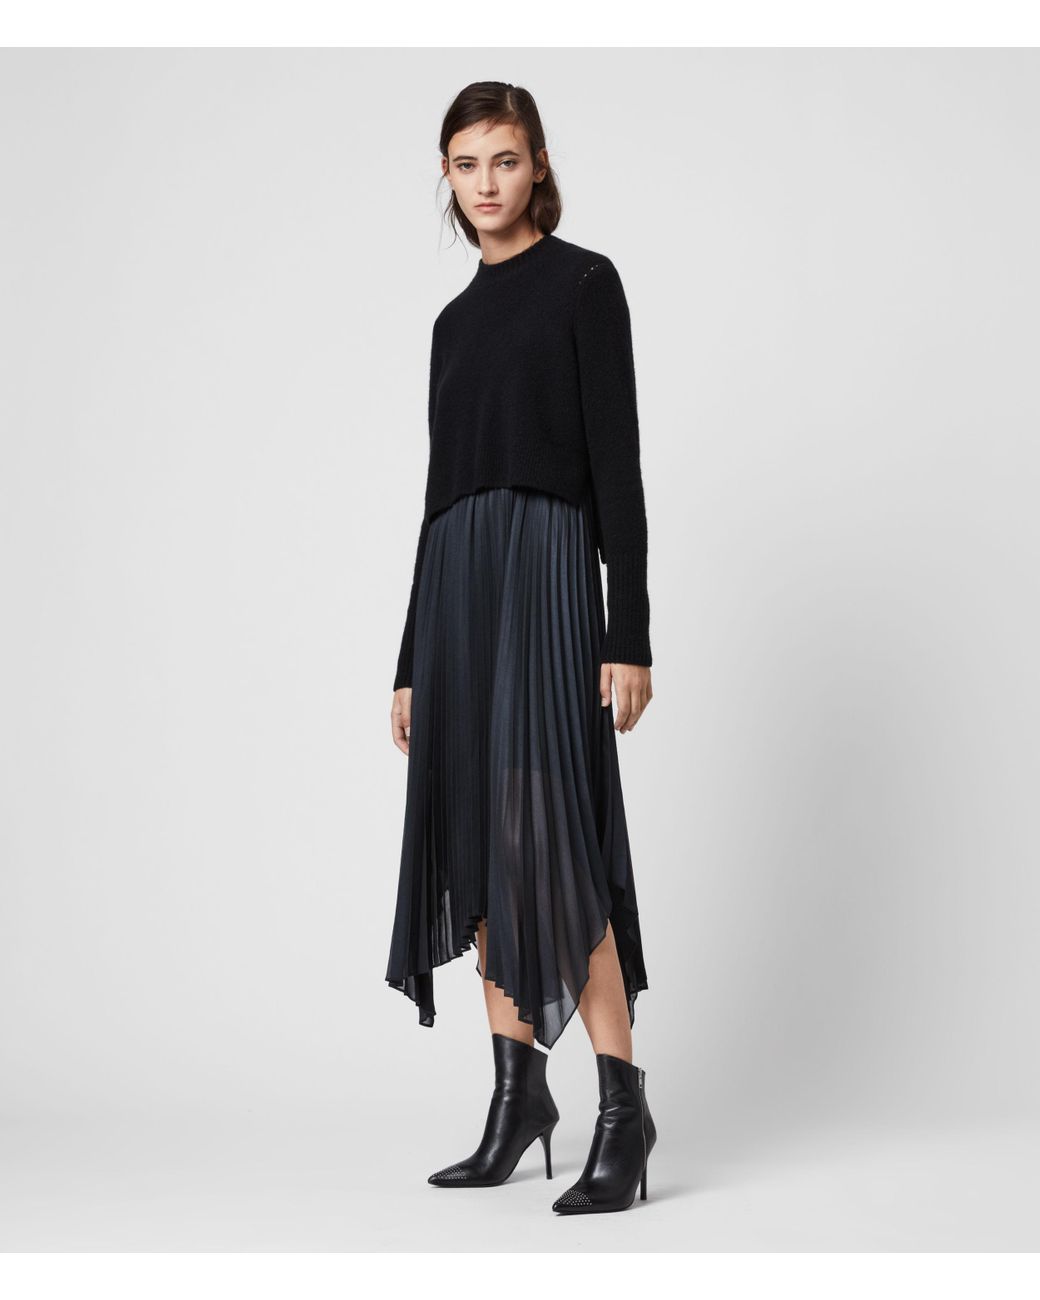 AllSaints Women's Wool Regular Fit Lerin Knit 2-in-1 Dress in Black | Lyst